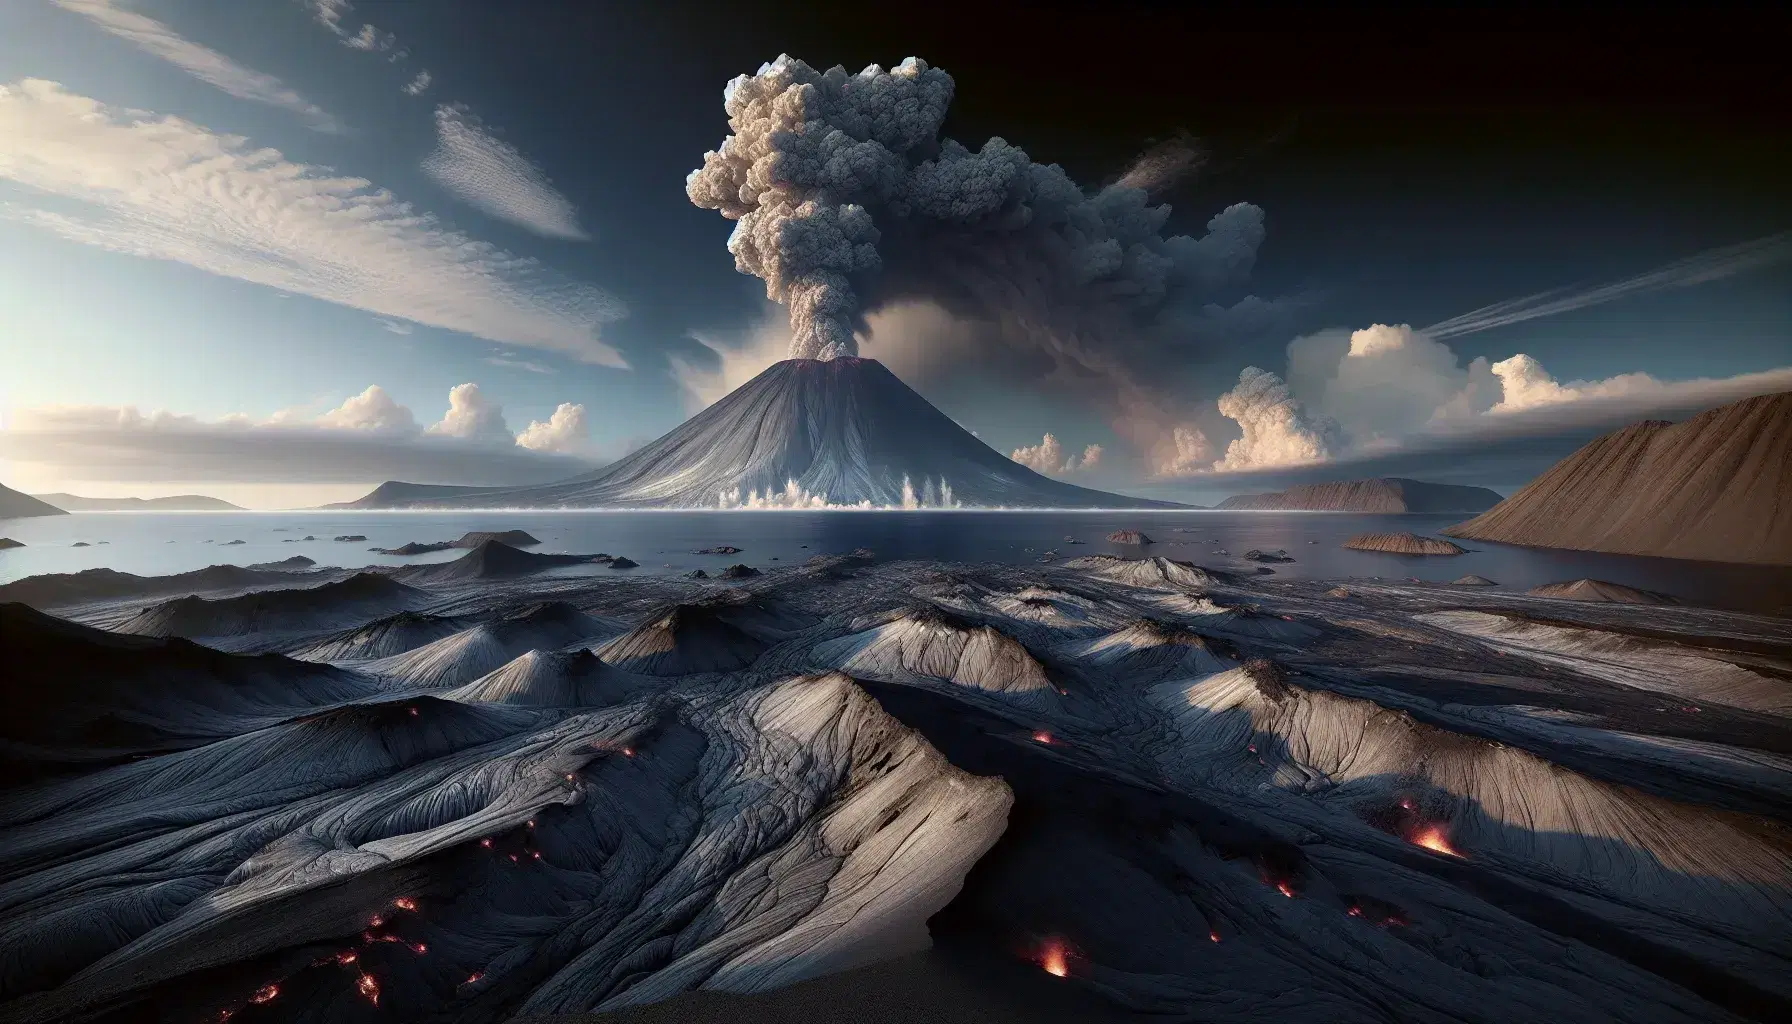 Paisaje volcánico primitivo con lava solidificada y cono volcánico humeante al atardecer, junto a un océano con fumarolas.